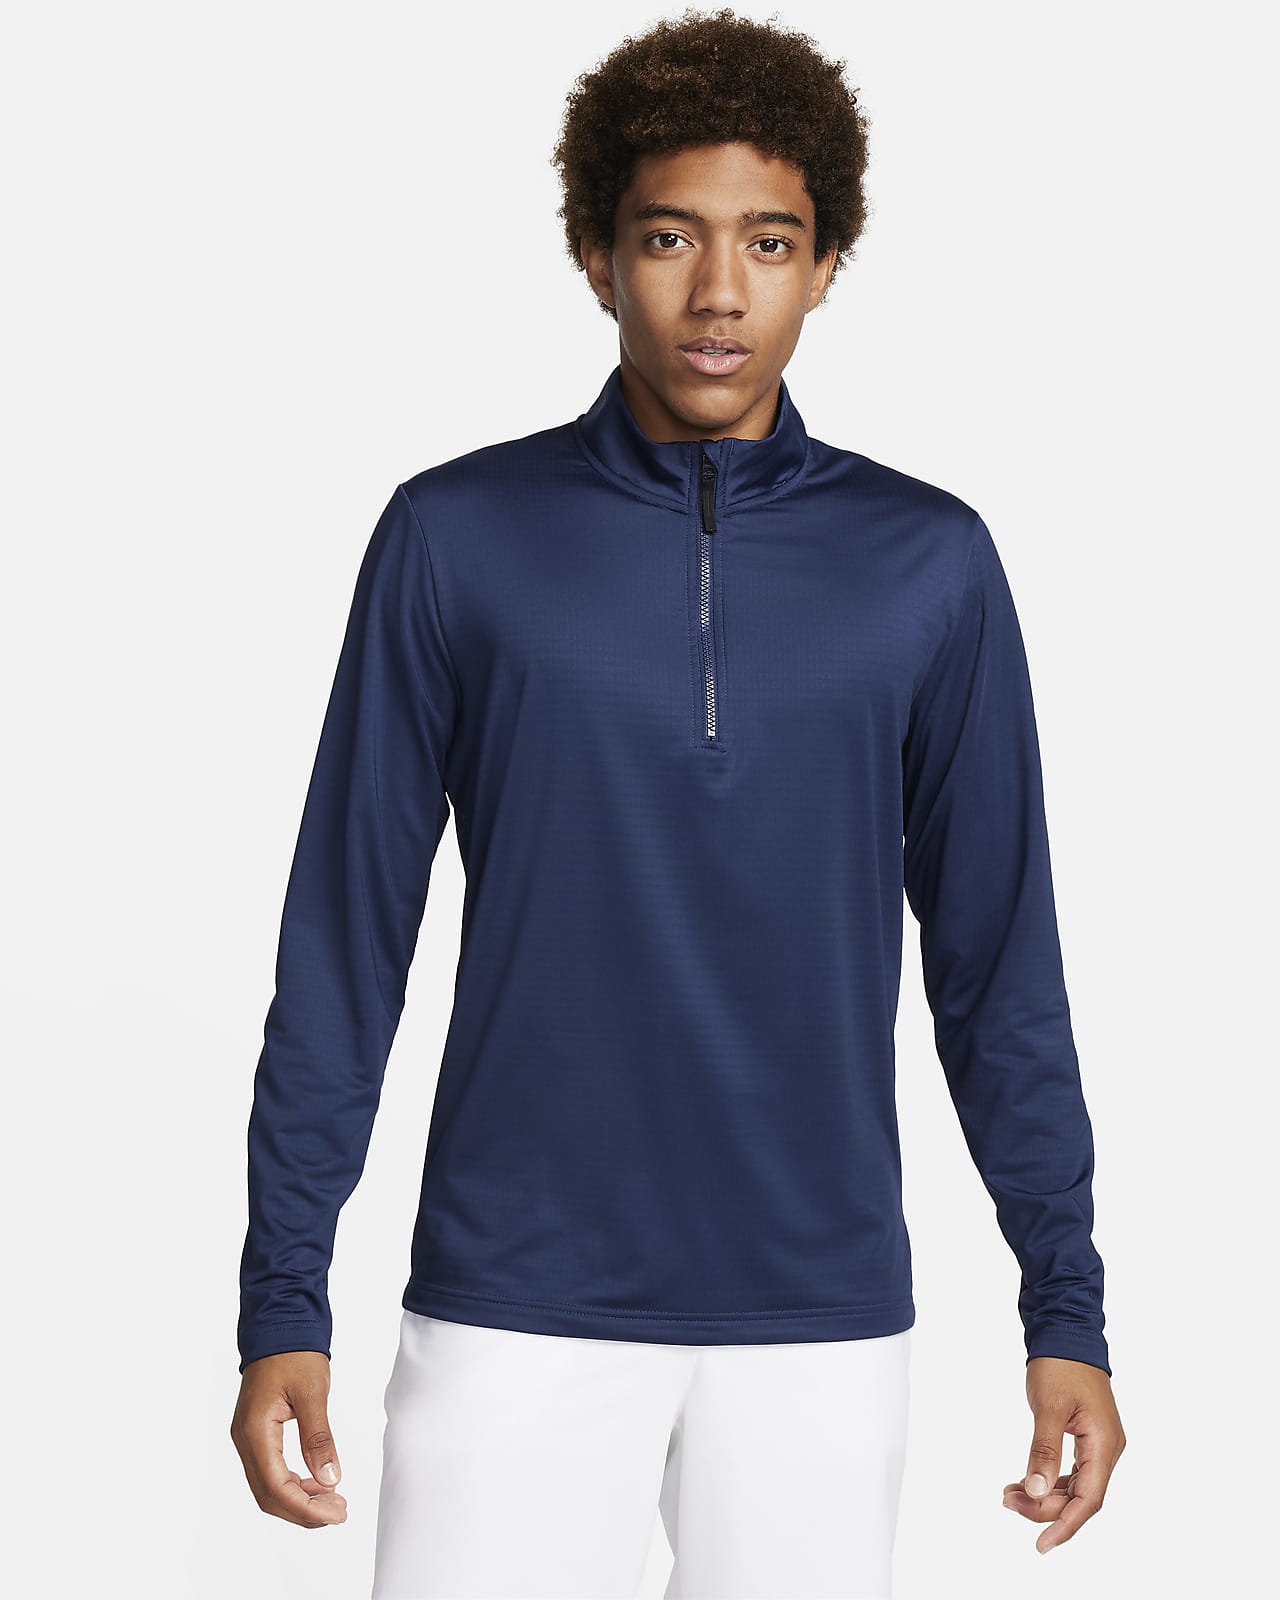 Ανδρική μπλούζα γκολφ Dri-FIT με φερμουάρ στο 1/2 του μήκους Nike Victory